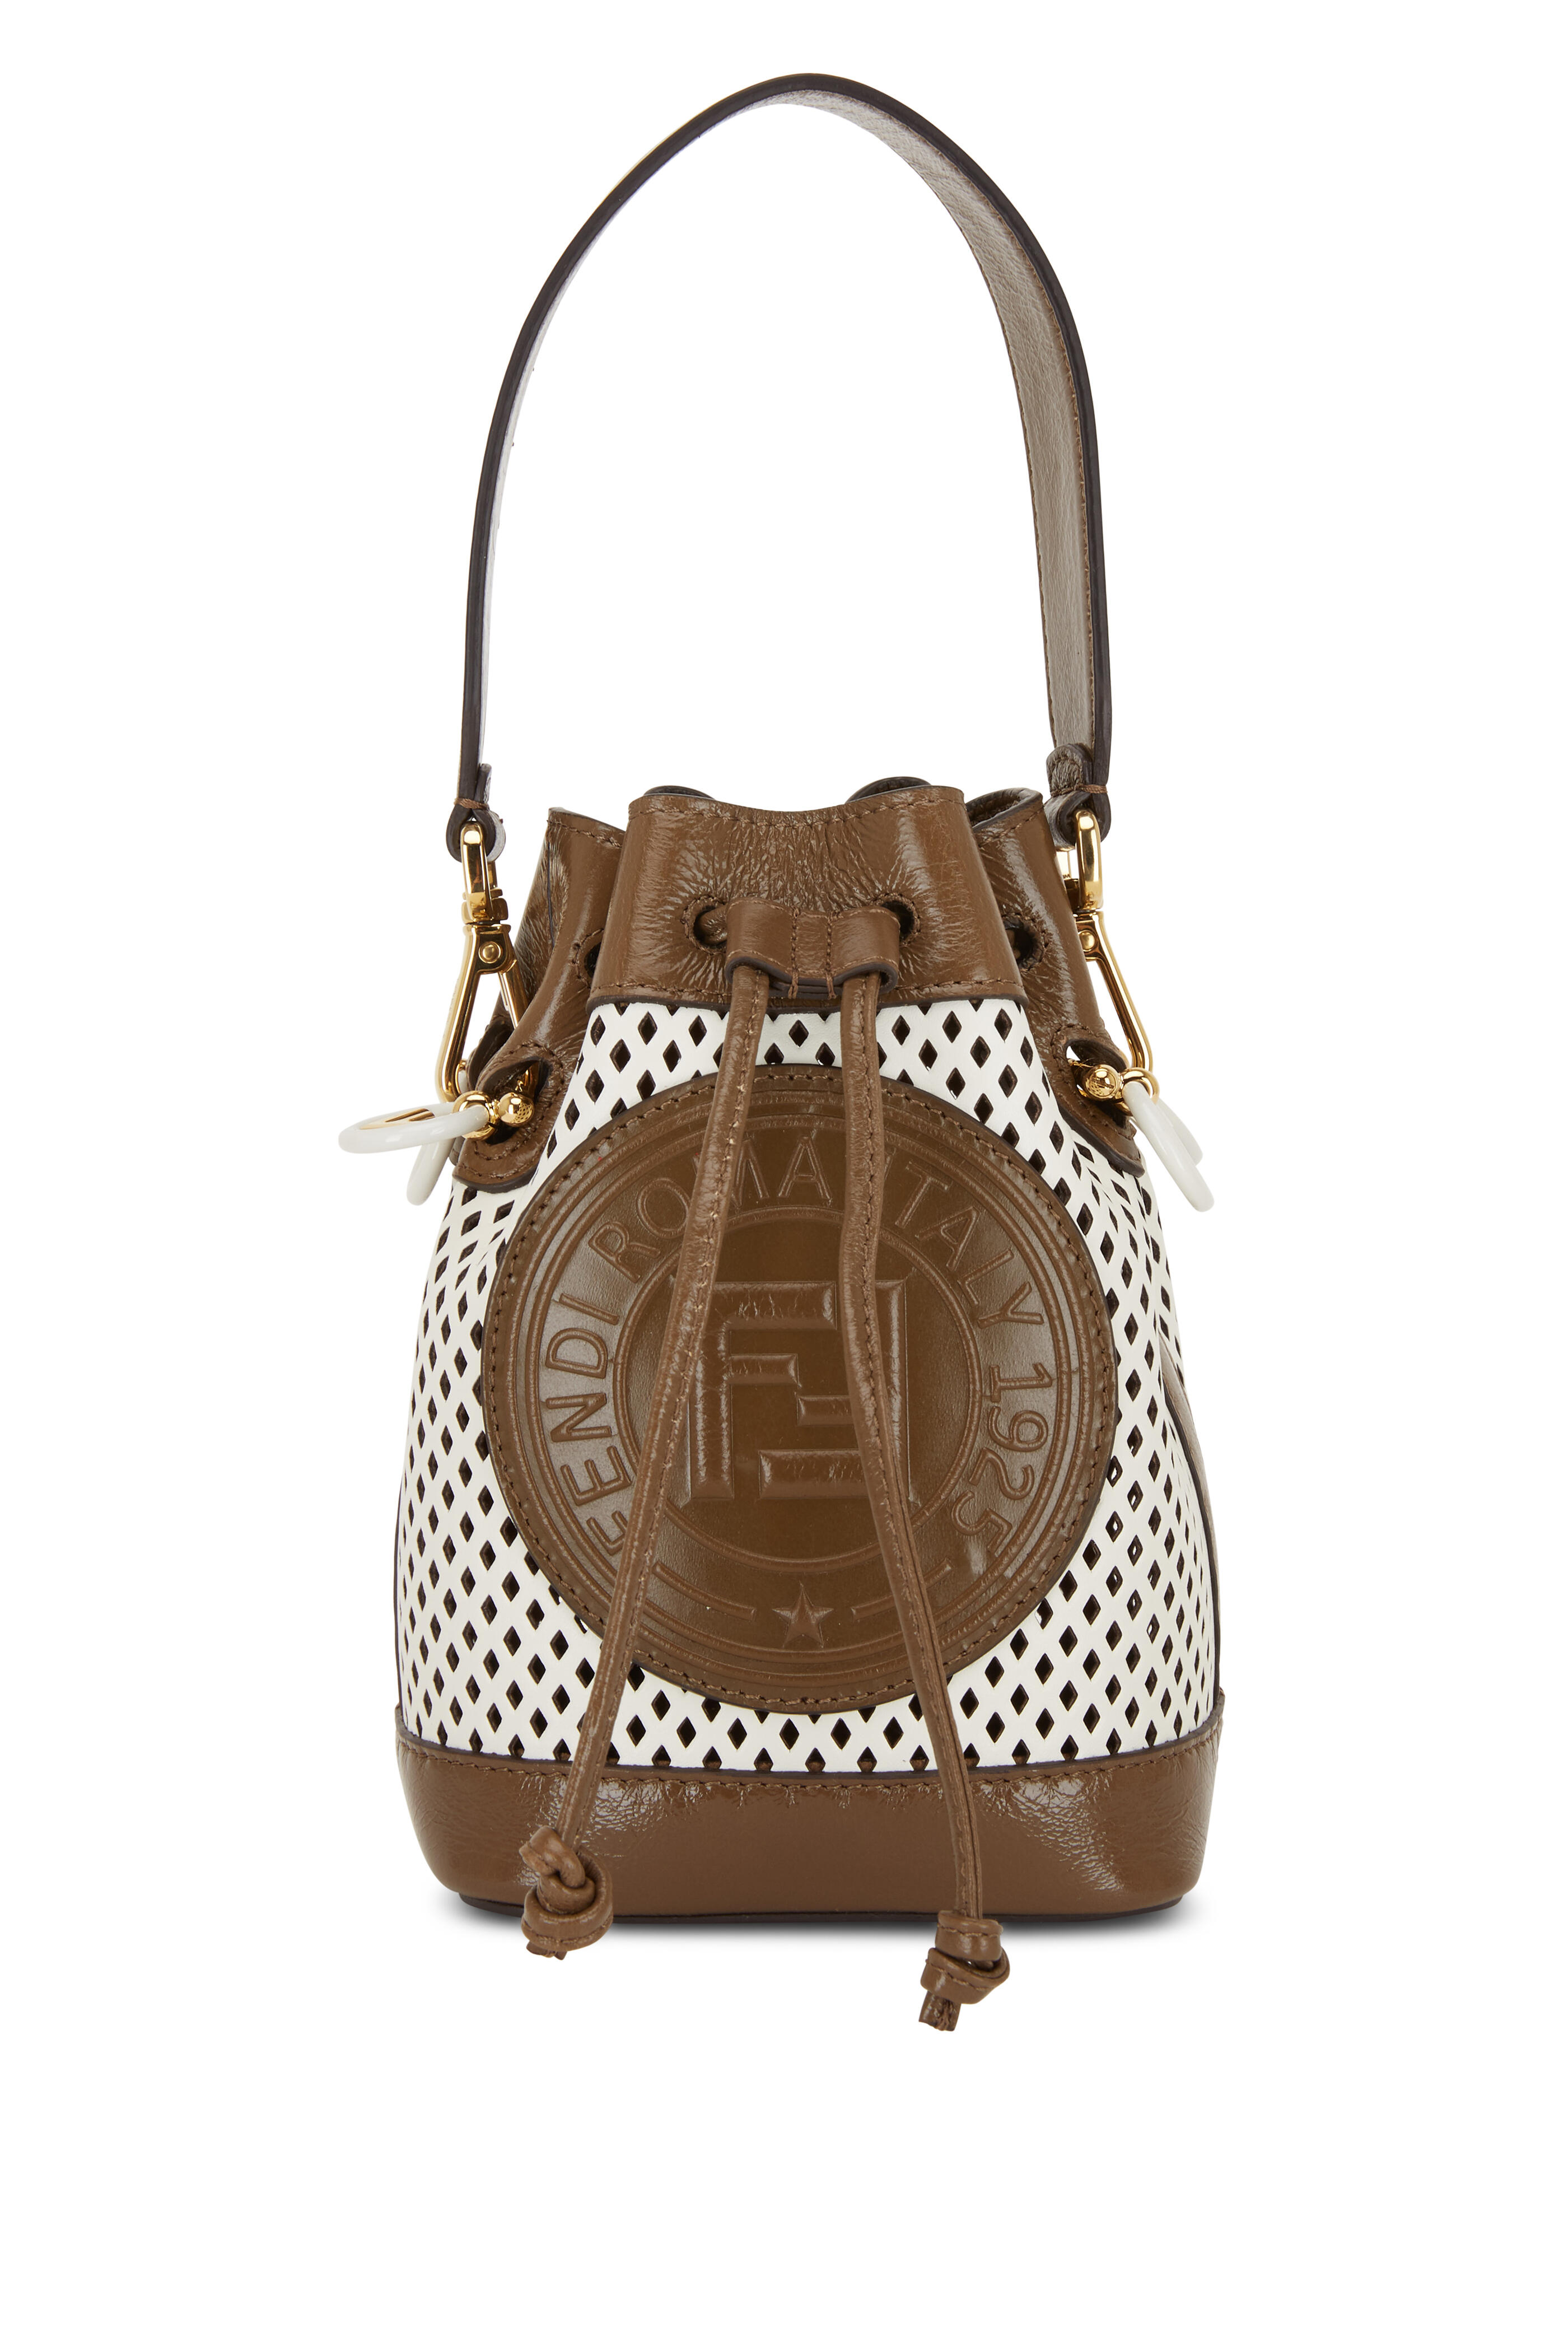 Fendi Mon Tresor Mini Leather Bucket Bag in Brown